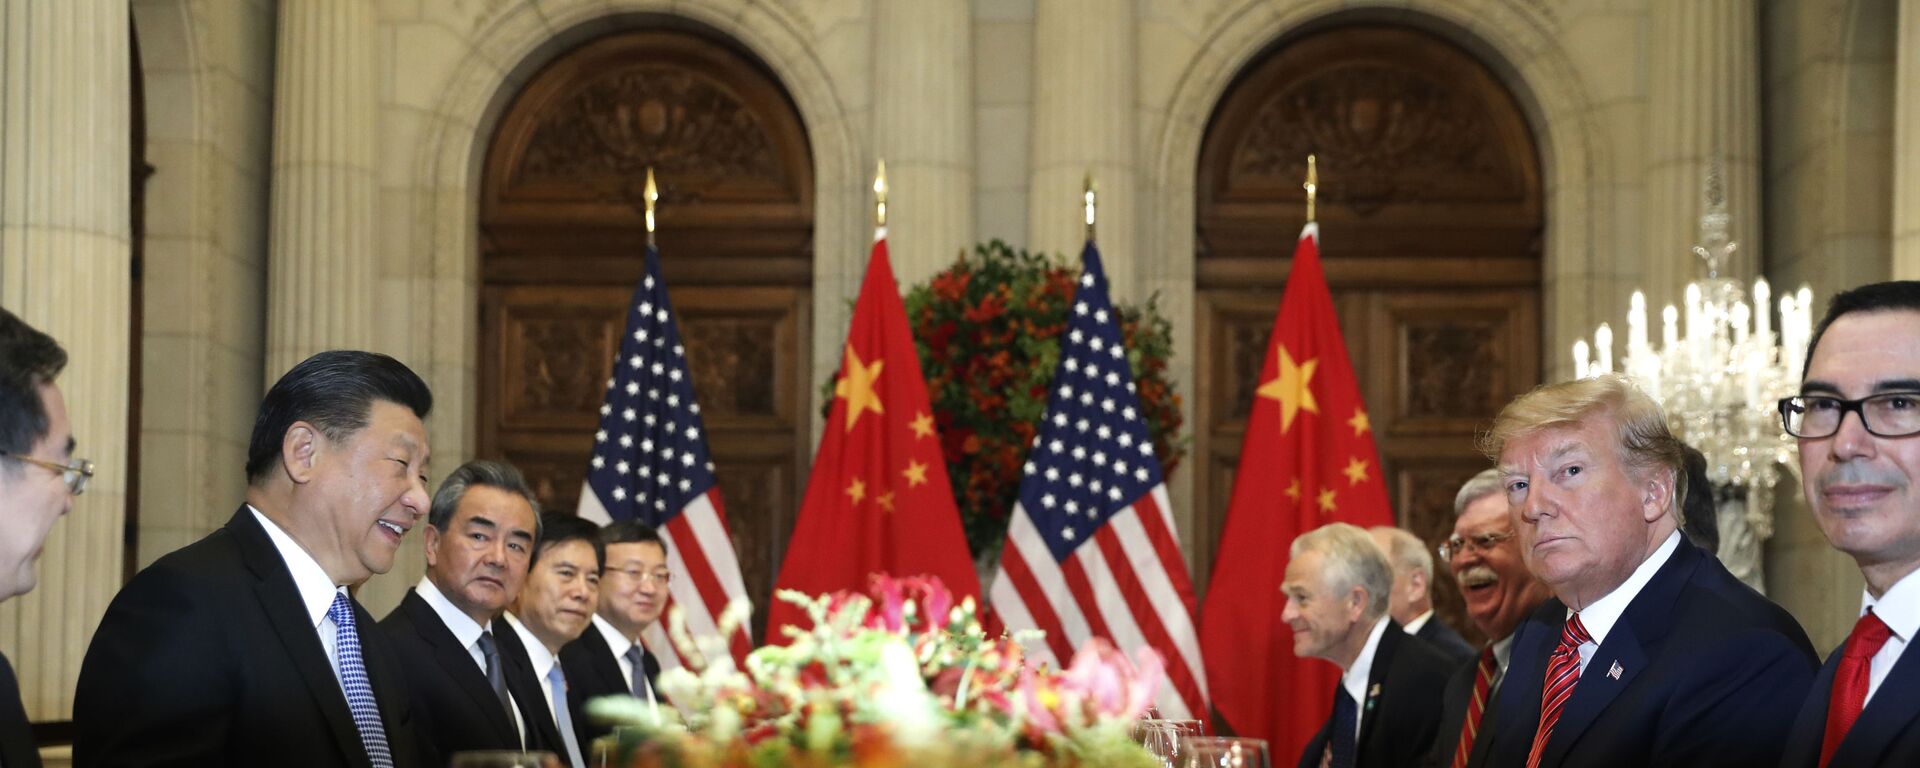 Встреча президента США Дональда Трампа и председателя КНР Си Цзиньпиня на саммите G20 в Аргентине - Sputnik Молдова, 1920, 26.06.2020